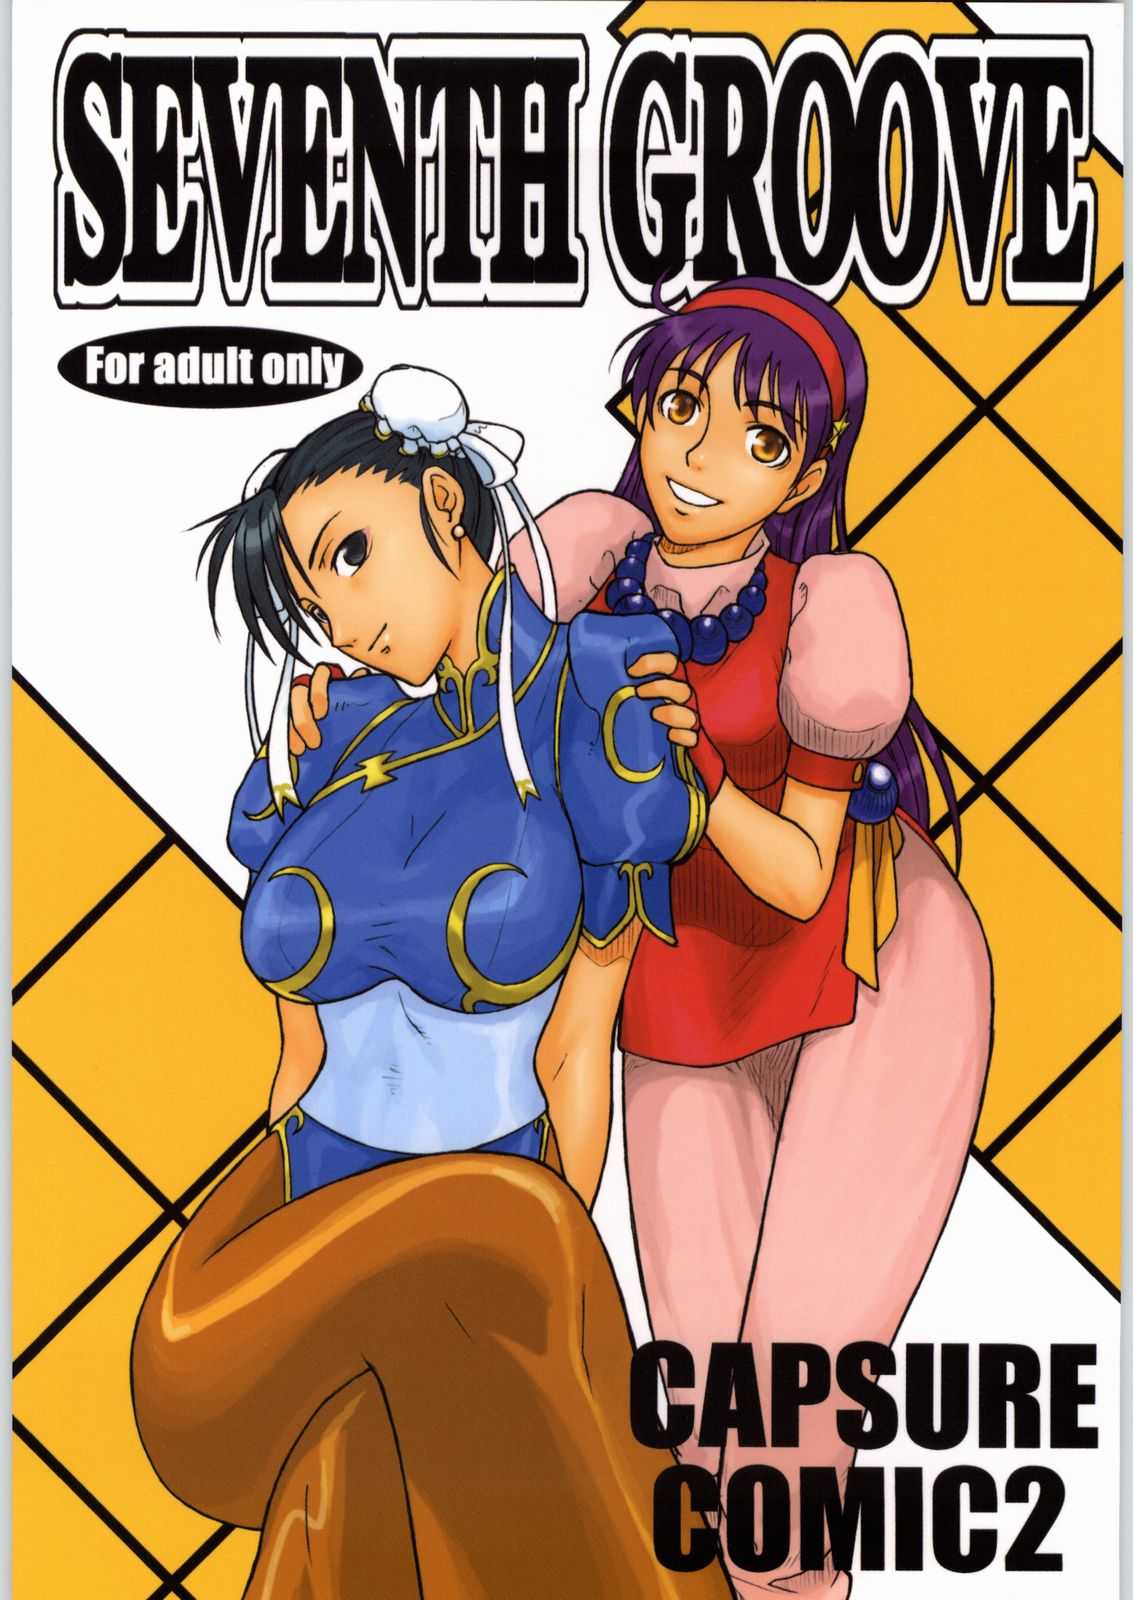 [Capcom vs SNK] Seventh Groove (Capsure Comic2) 